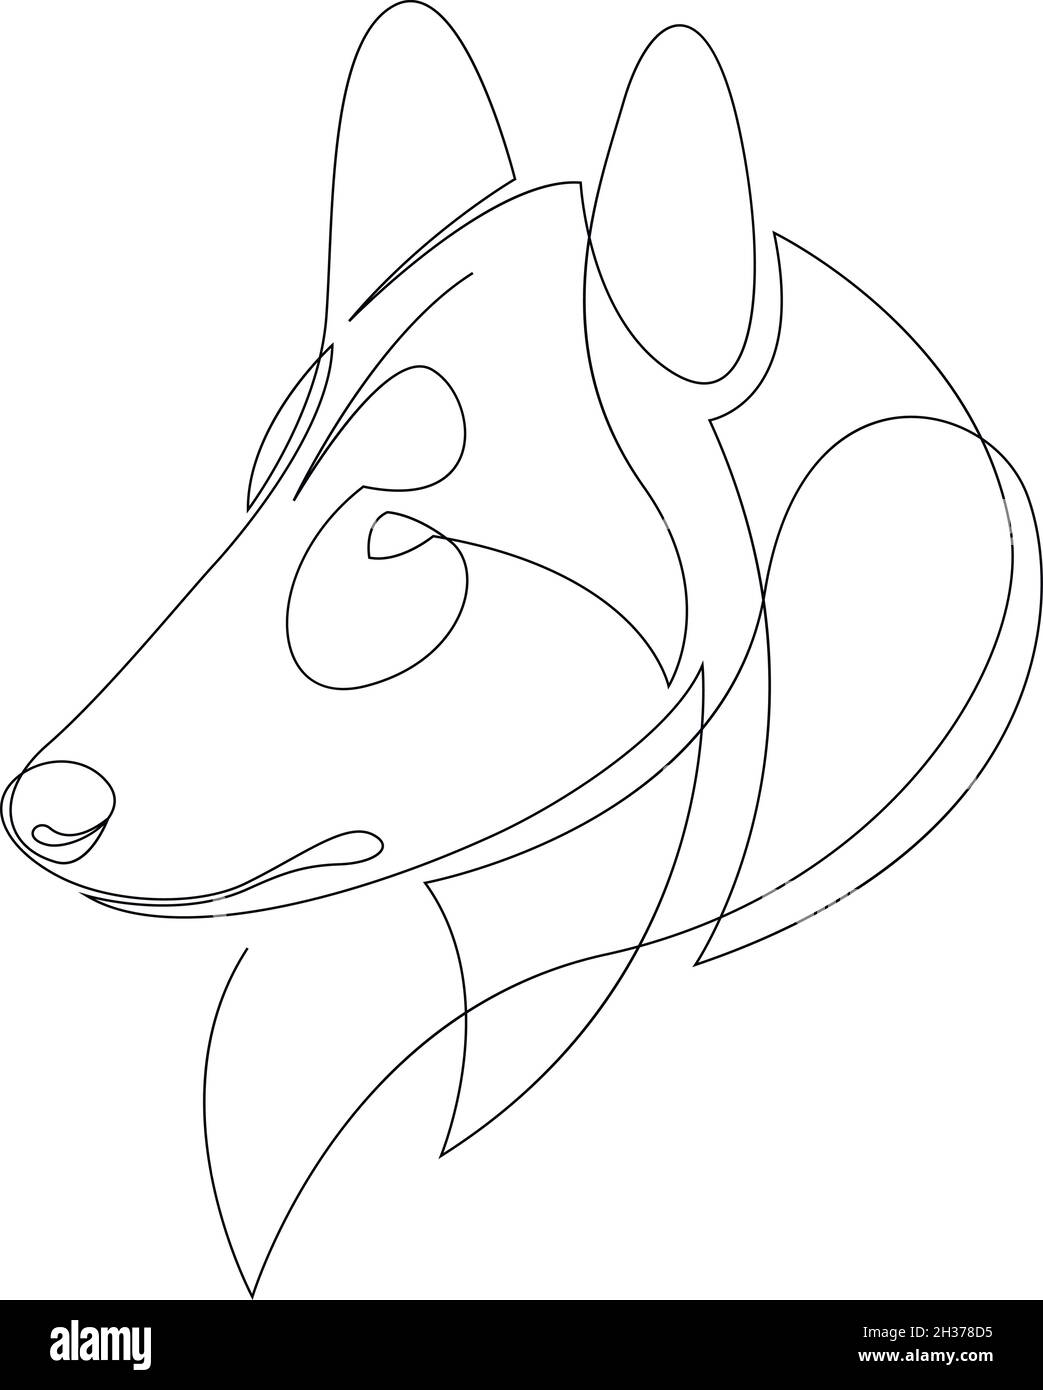 Dessin au trait tatouage chien de collie rugueux.Illustration vectorielle.Art unique gratuit pour les races de chiens longs.Dessin de contour continu du chien.Animaux de compagnie 1 L. Illustration de Vecteur